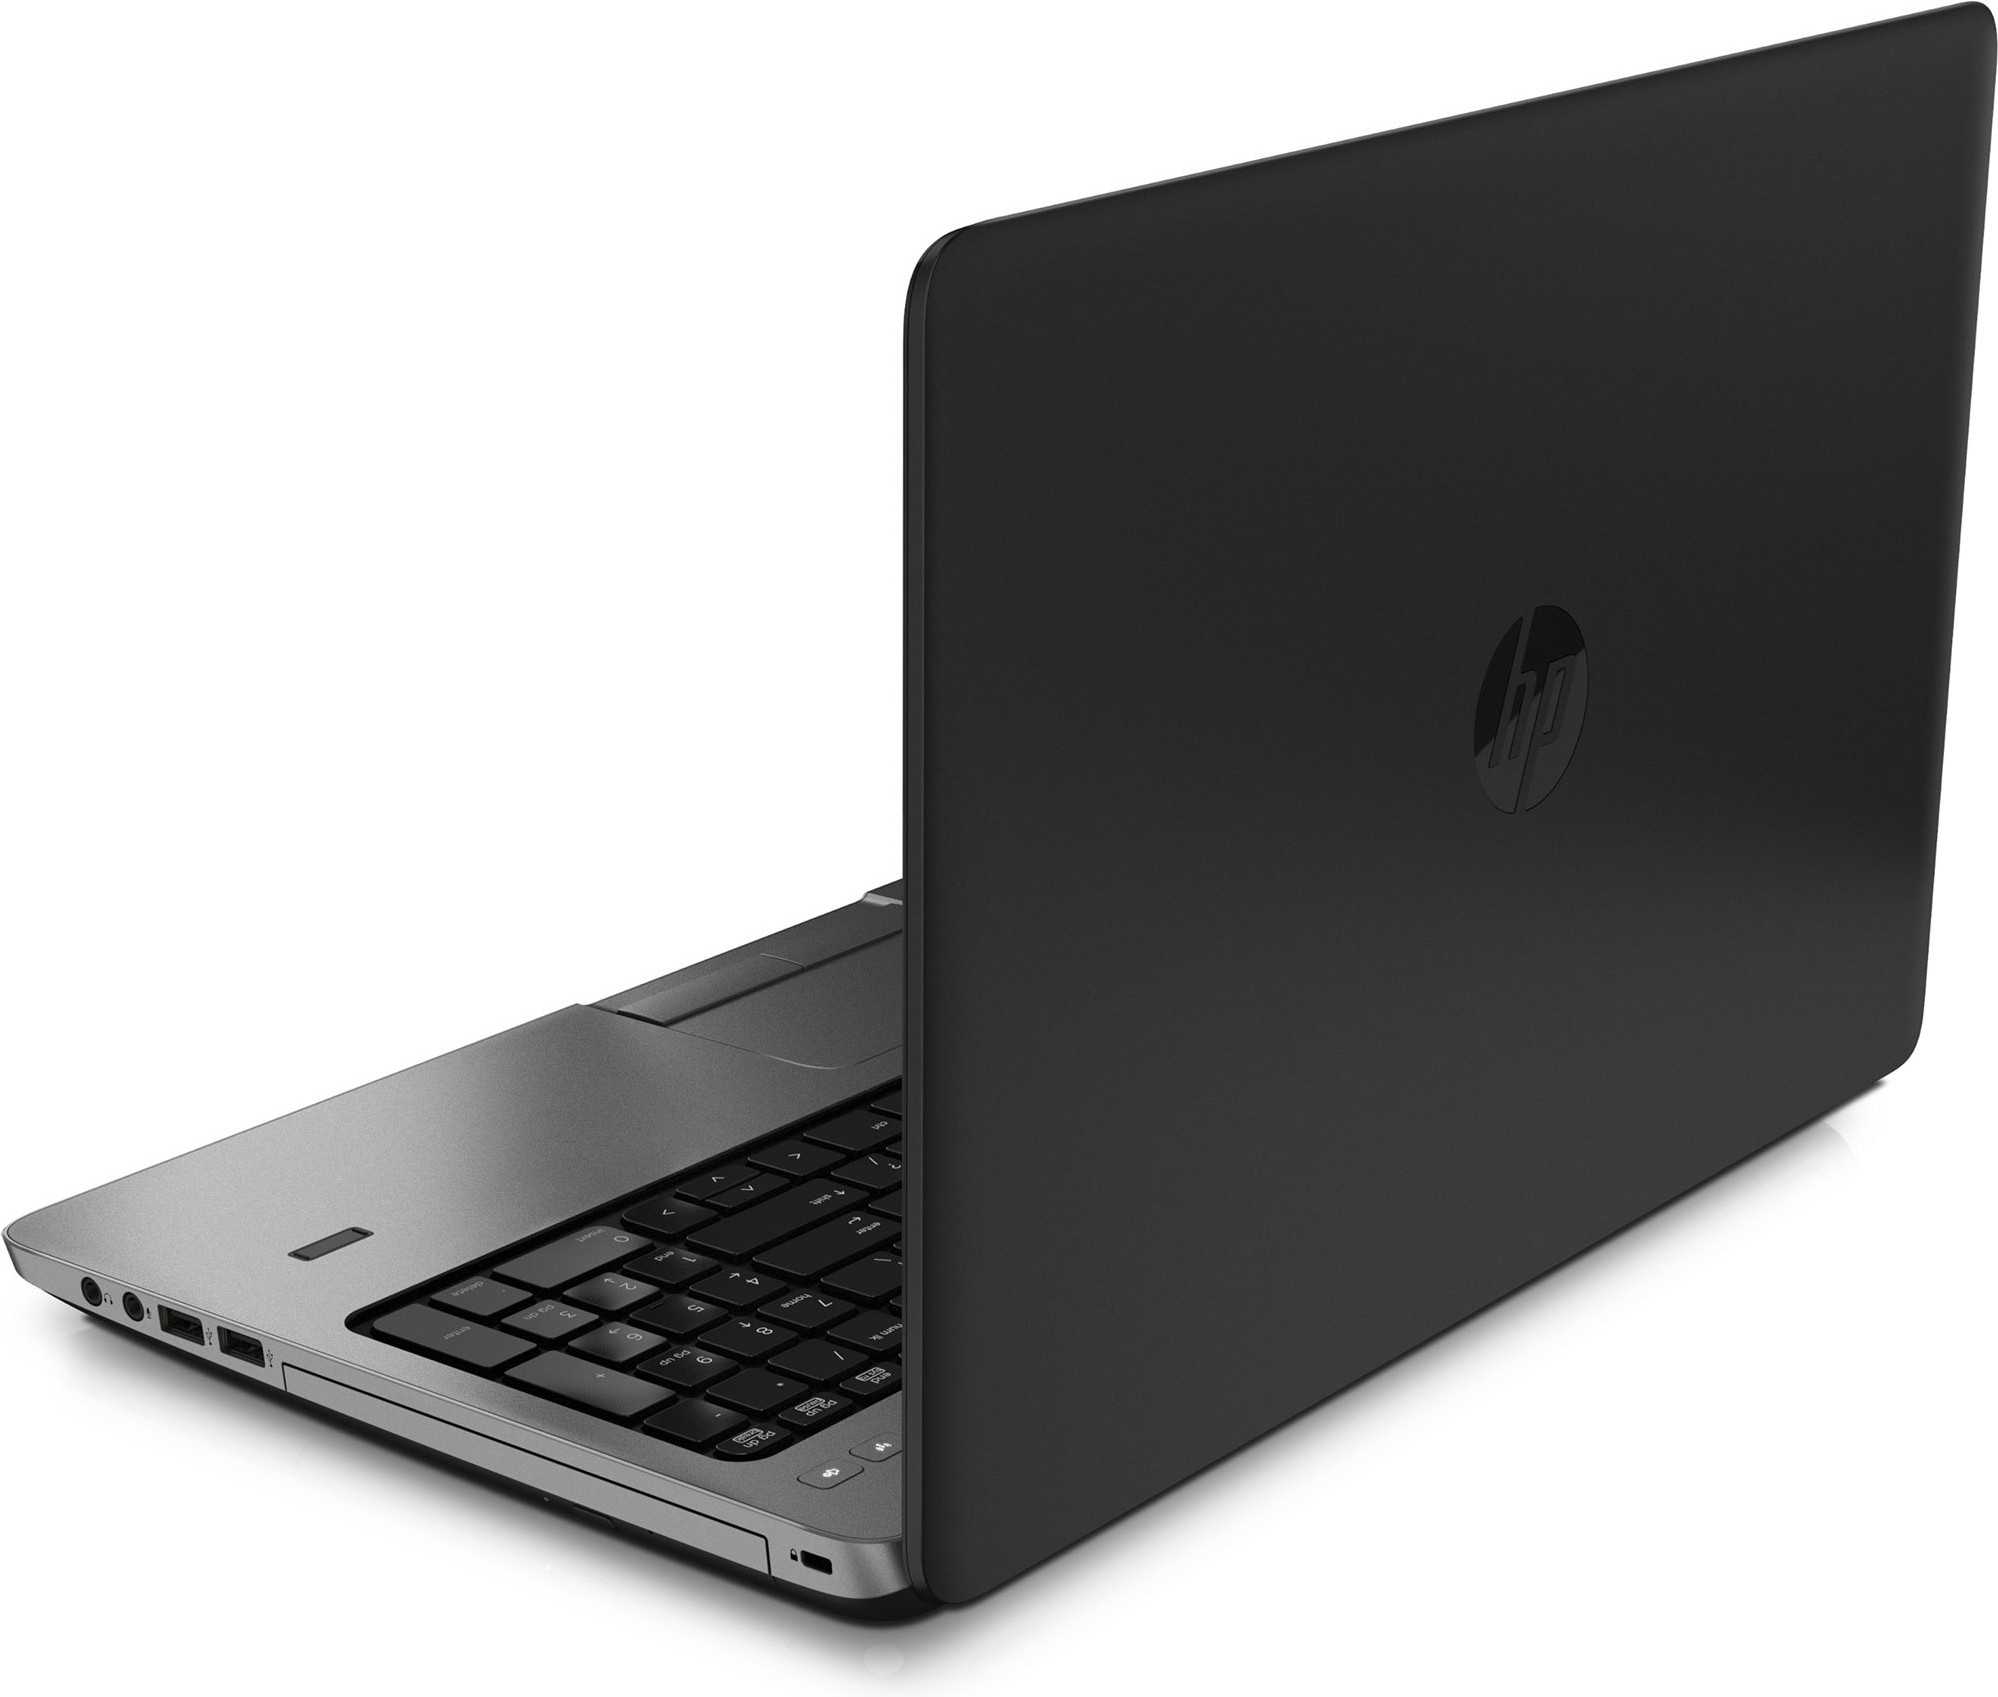 Ноутбук HP ProBook 455 G1 (F0X96ES) - подробные характеристики обзоры видео фото Цены в интернет-магазинах где можно купить ноутбук HP ProBook 455 G1 (F0X96ES)